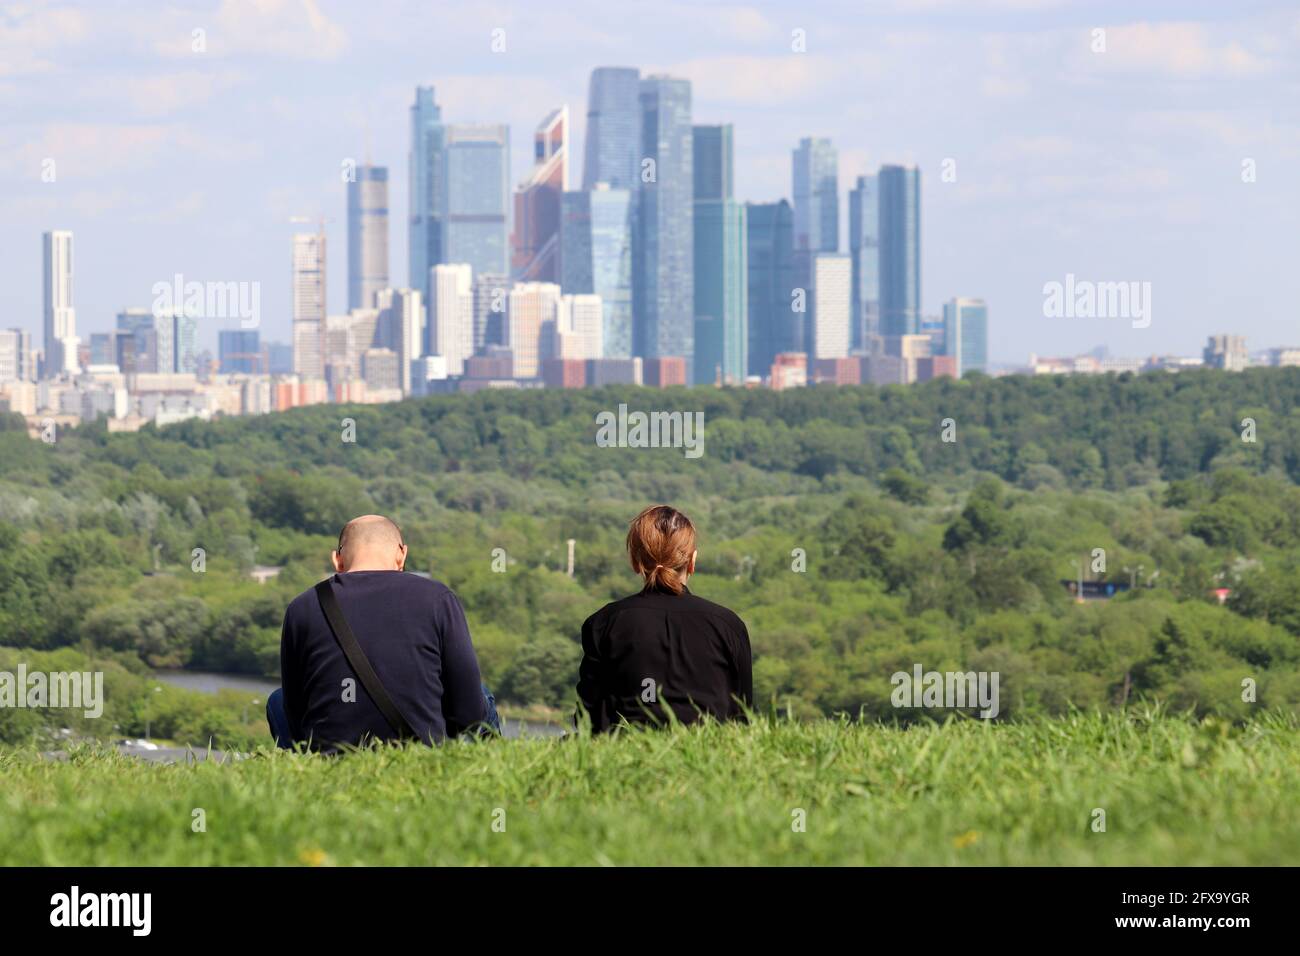 Ehepaar sitzt im Gras gegen die Wolkenkratzer der Stadt Moskau. Futuristisches Stadtbild, Konzept der suburbanen Sommerfreizeitgestaltung Stockfoto